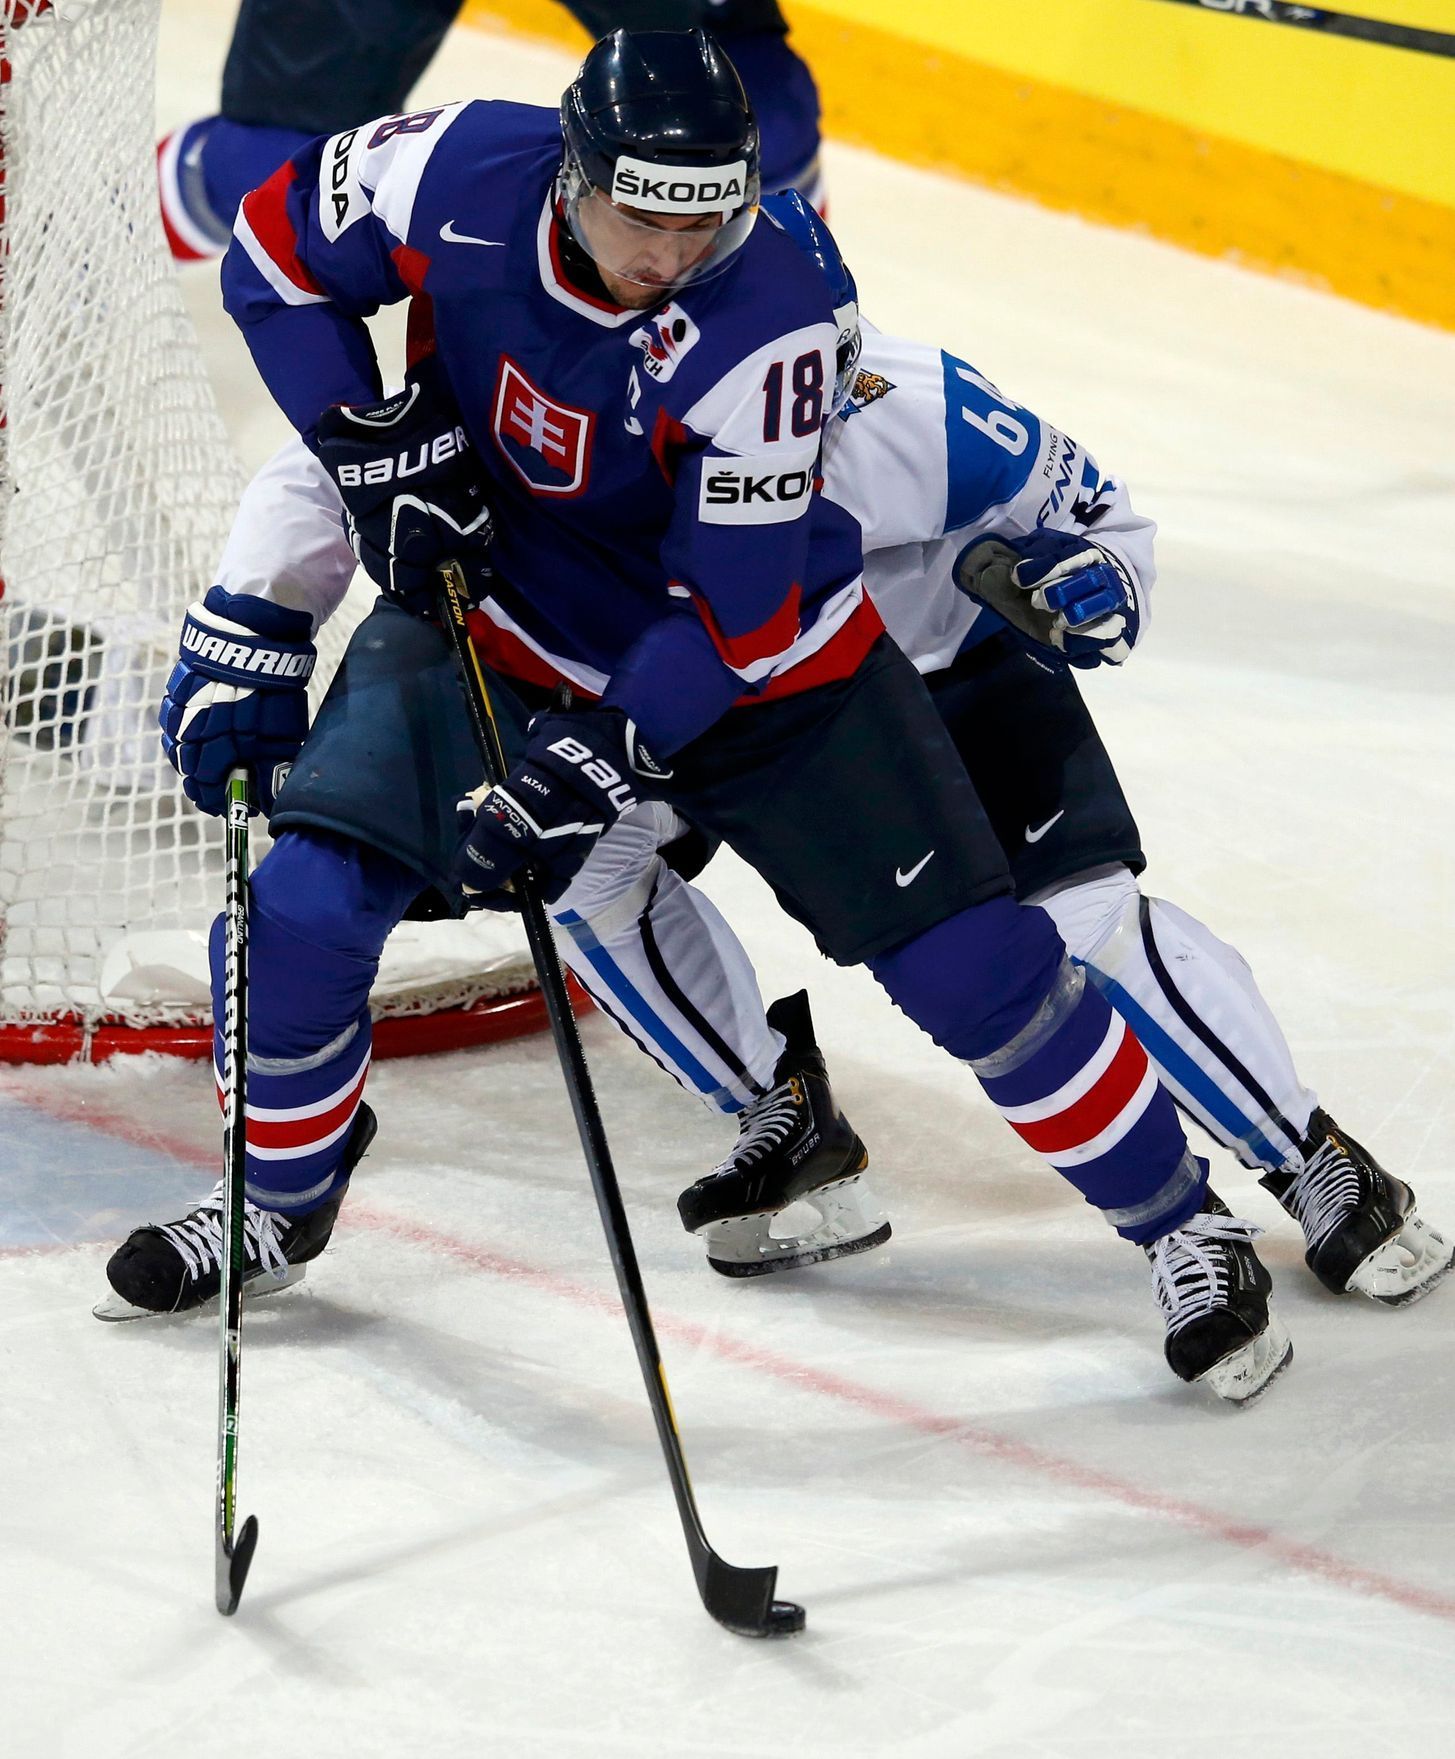 Hokej, MS 2013, Finsko - Slovensko: Mikael Granlund - Miroslav Šatan